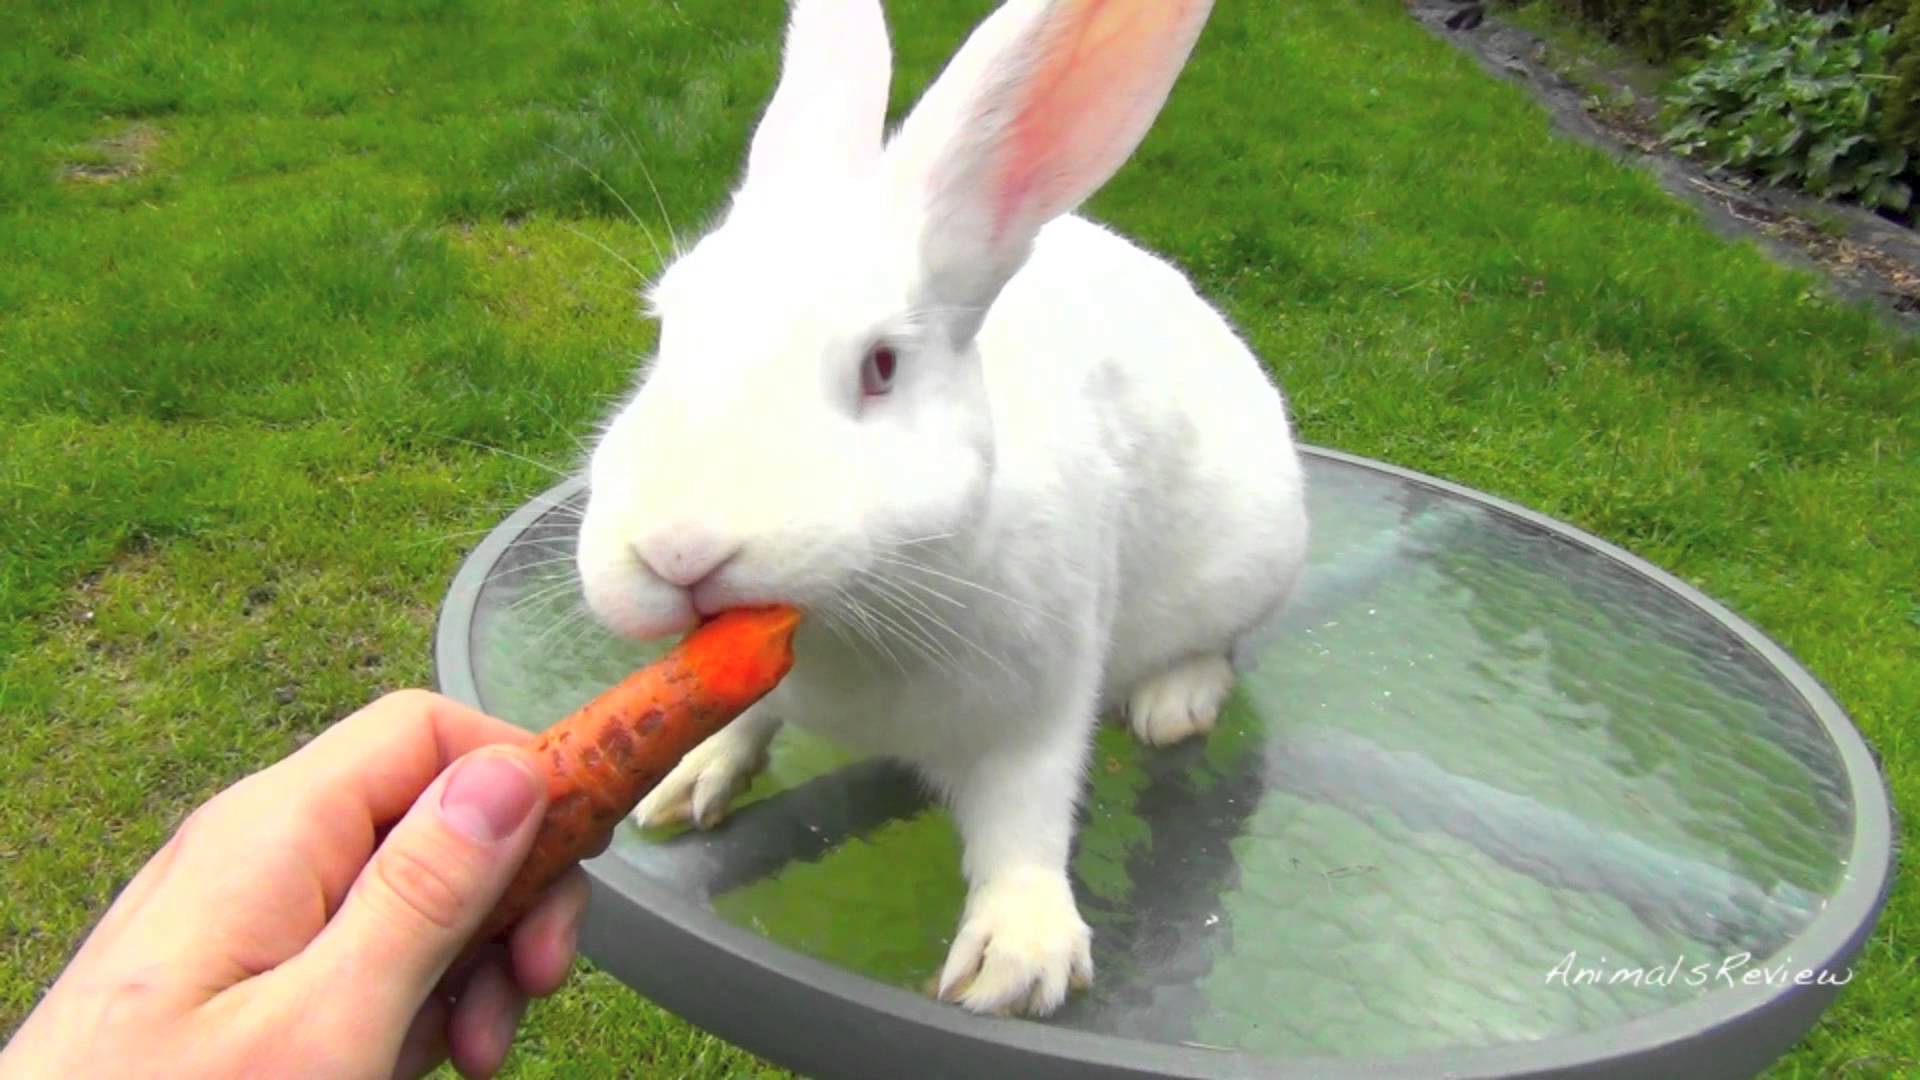 Bunny rabbit photos found on the web.